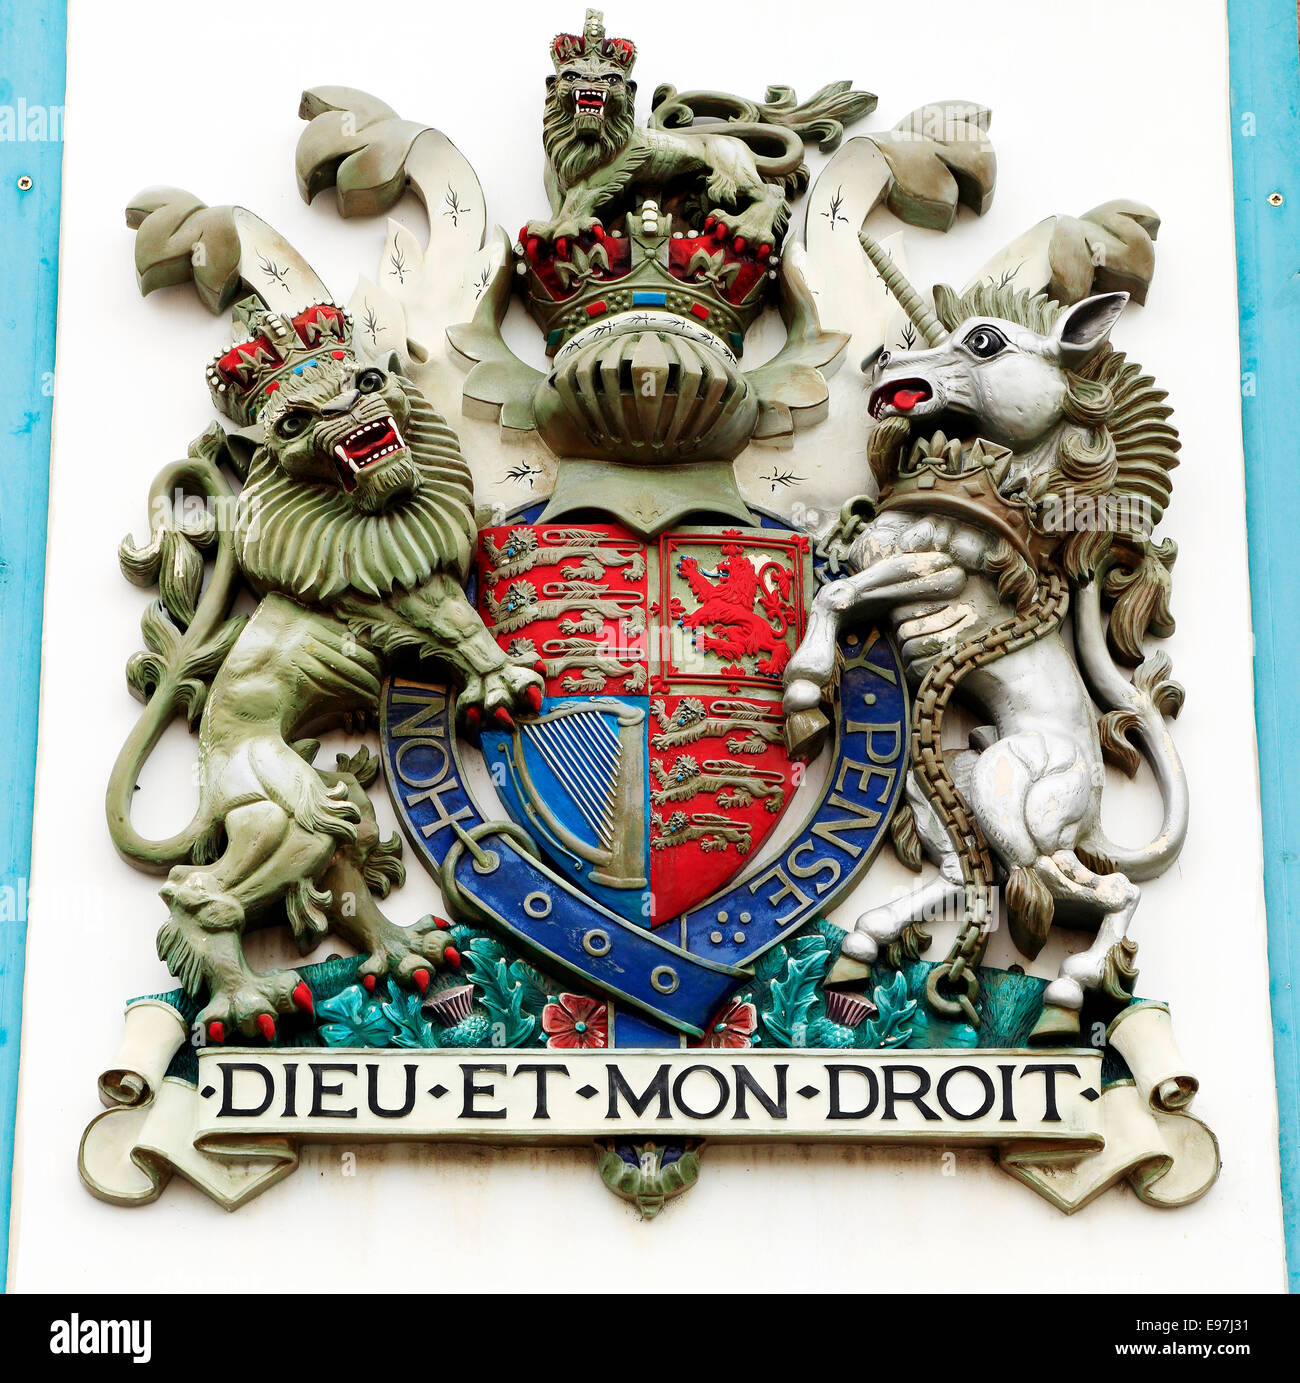 British Royal Coat of Arms, Lion et Licorne, Dieu et mon Droit, Angleterre Royaume-uni héraldique héraldique Banque D'Images